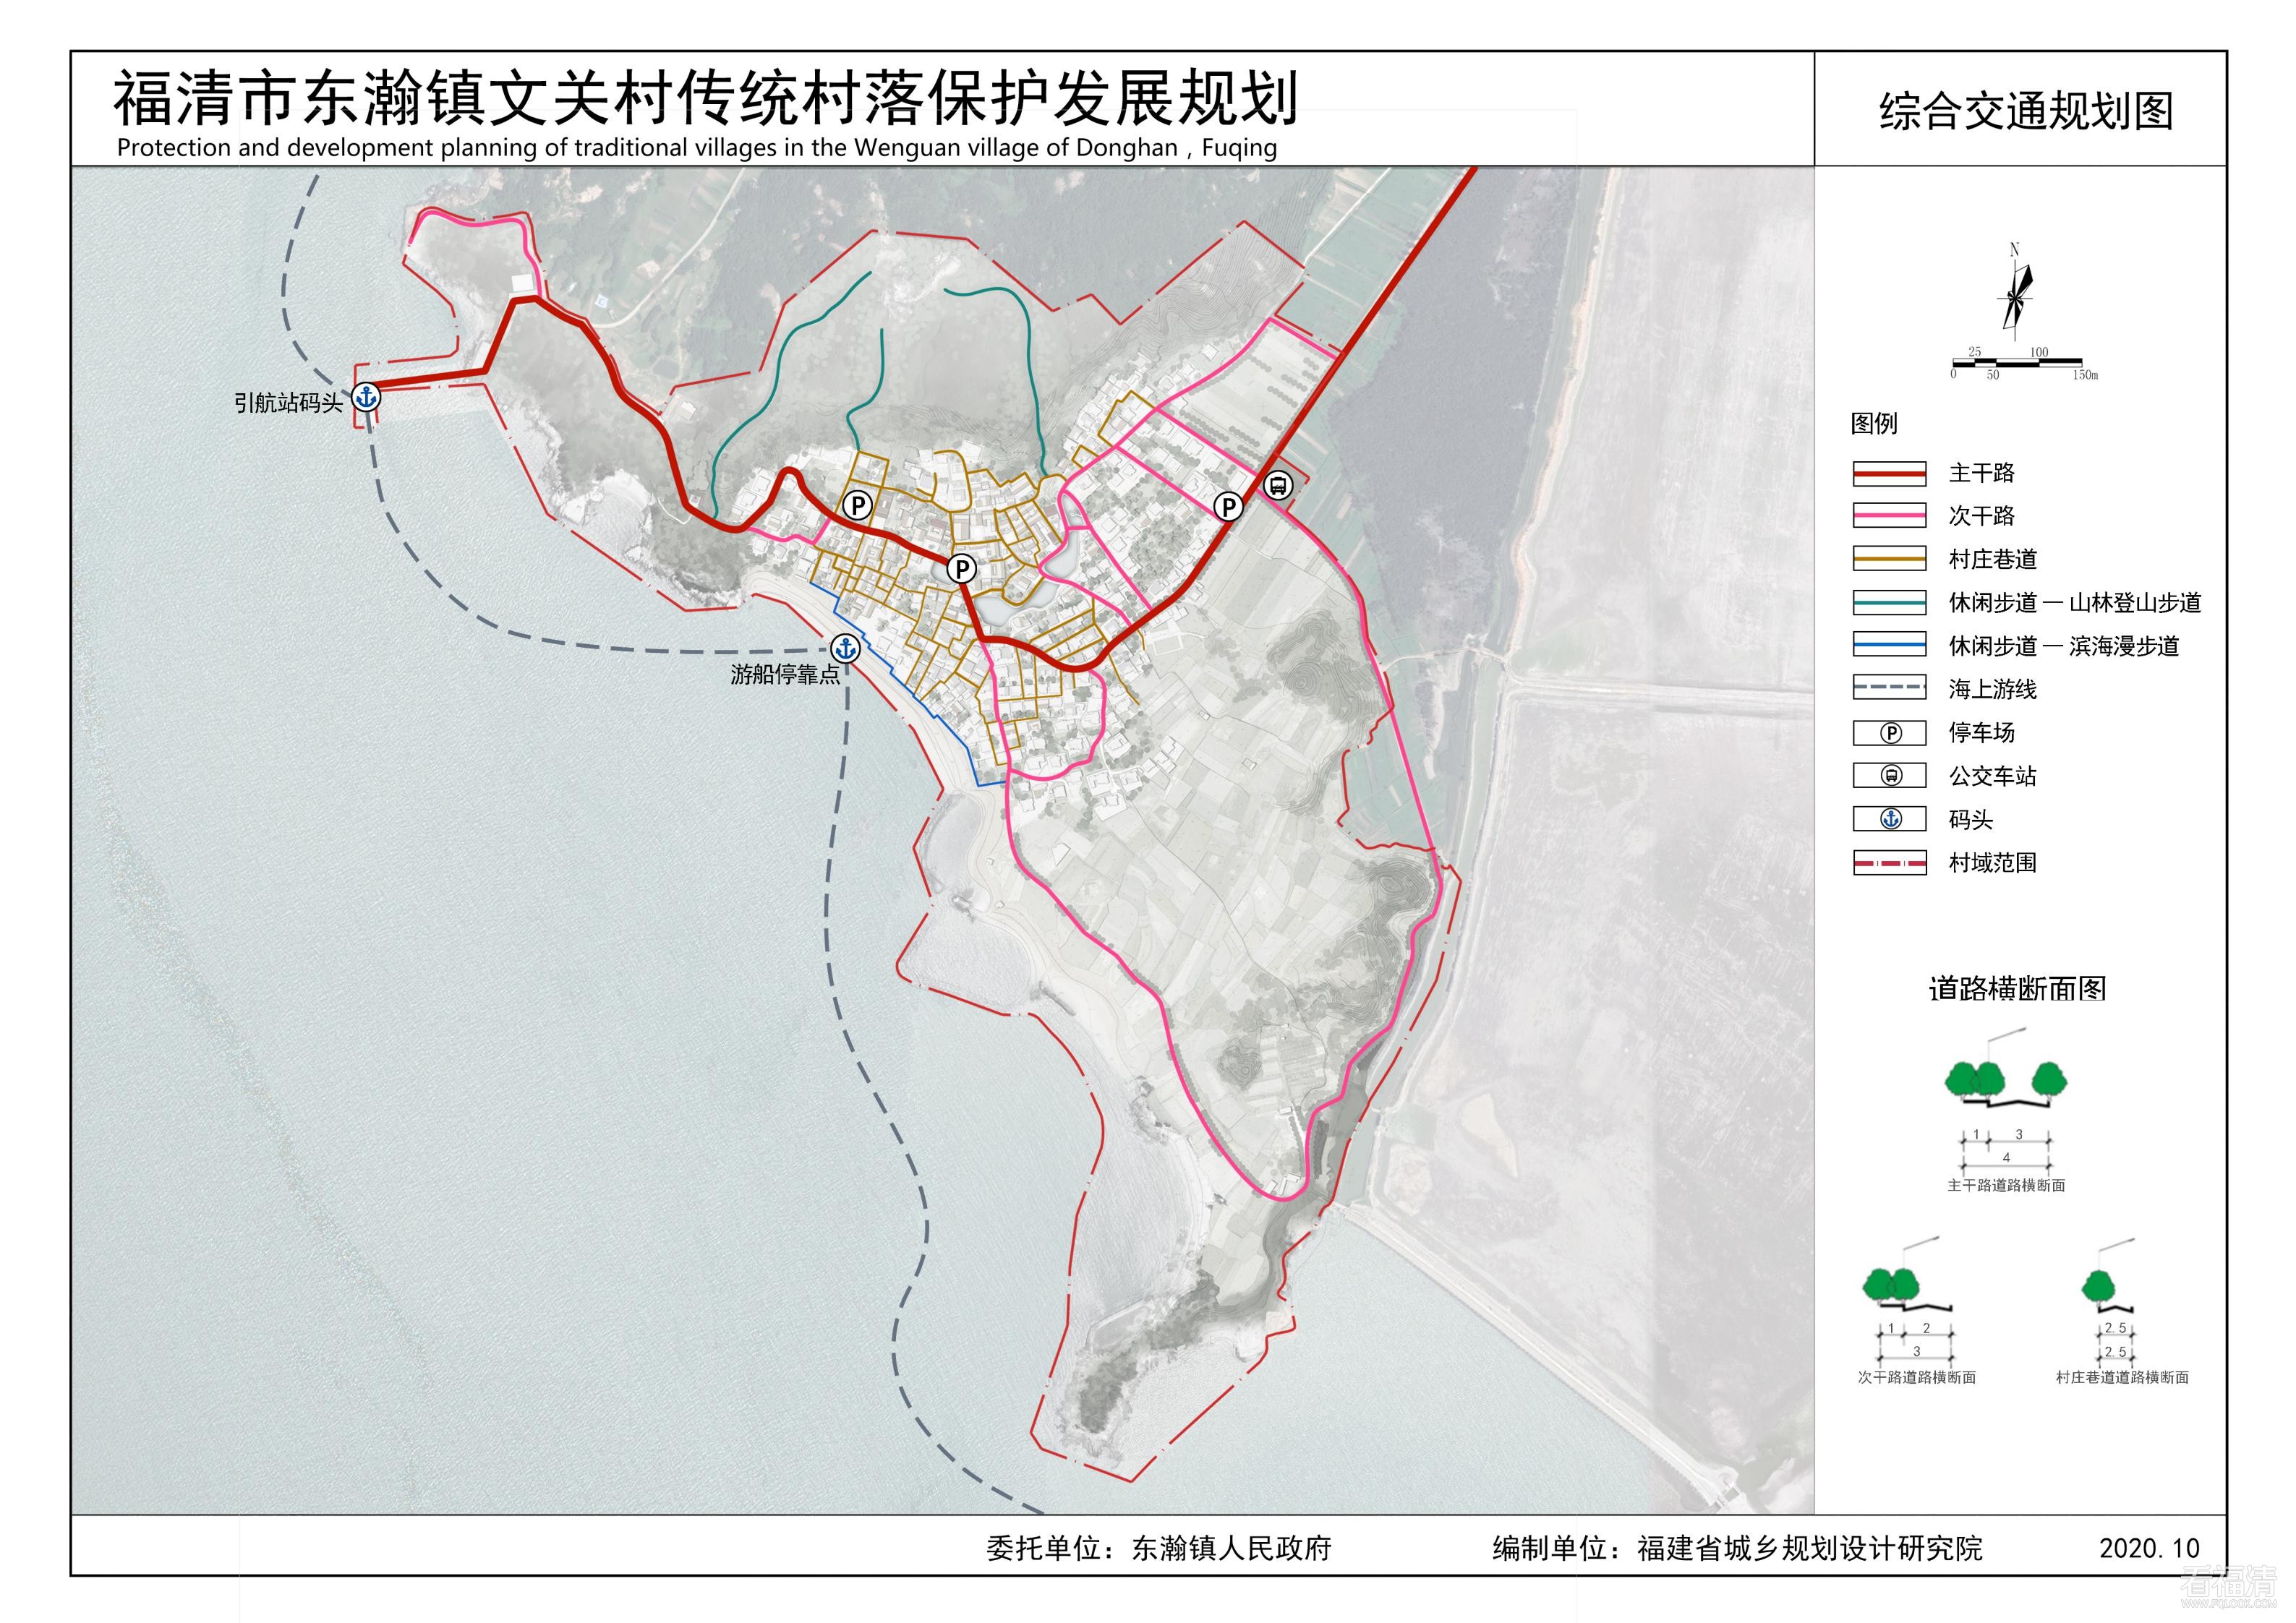 《福清市东瀚镇文关村传统村落保护发展规划（2020-2035年）》_05.jpg